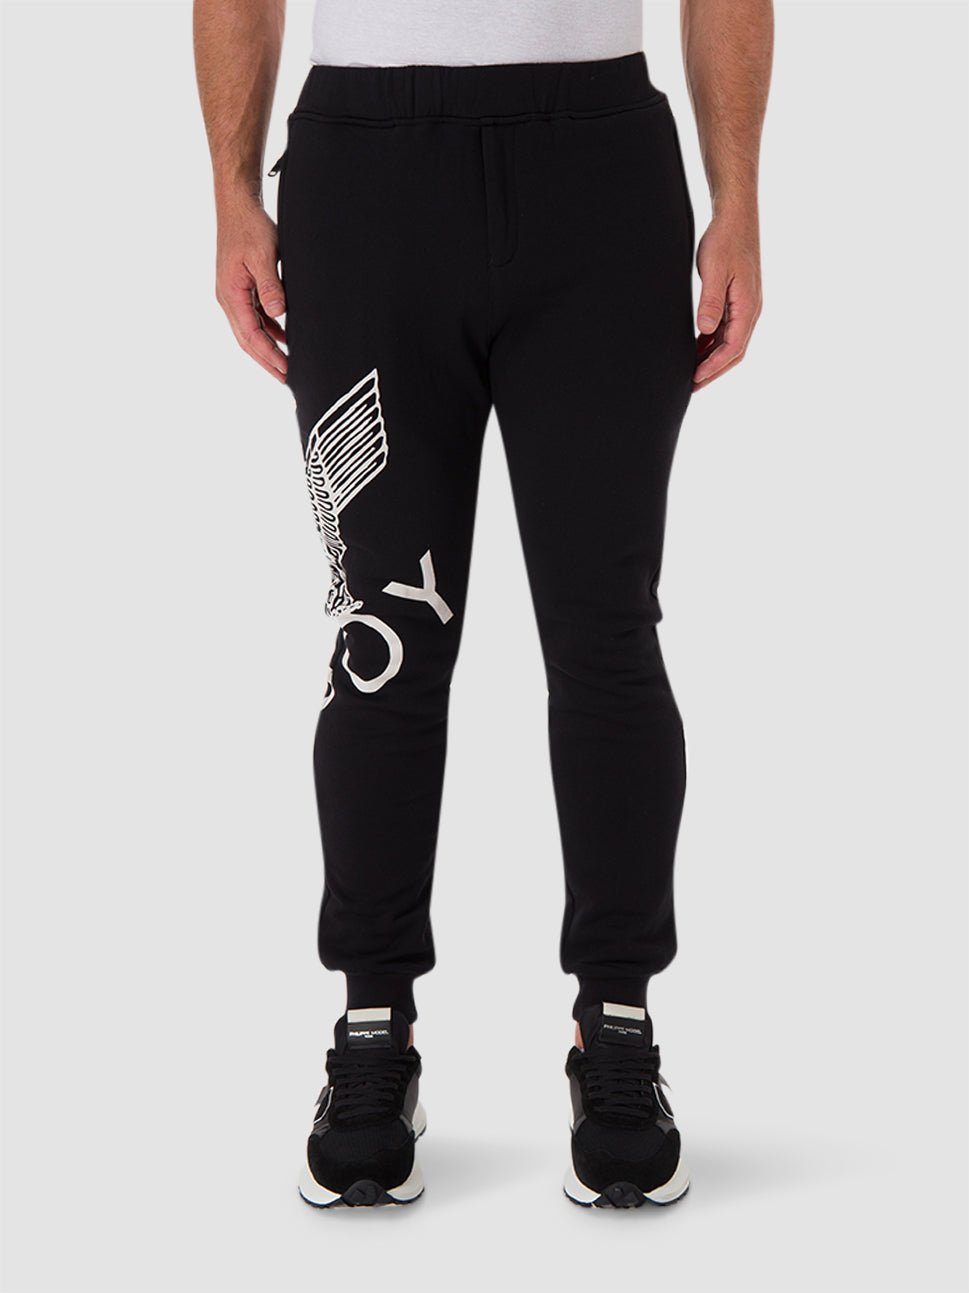 Shop latest trending Black/ White color Boy London Joggers